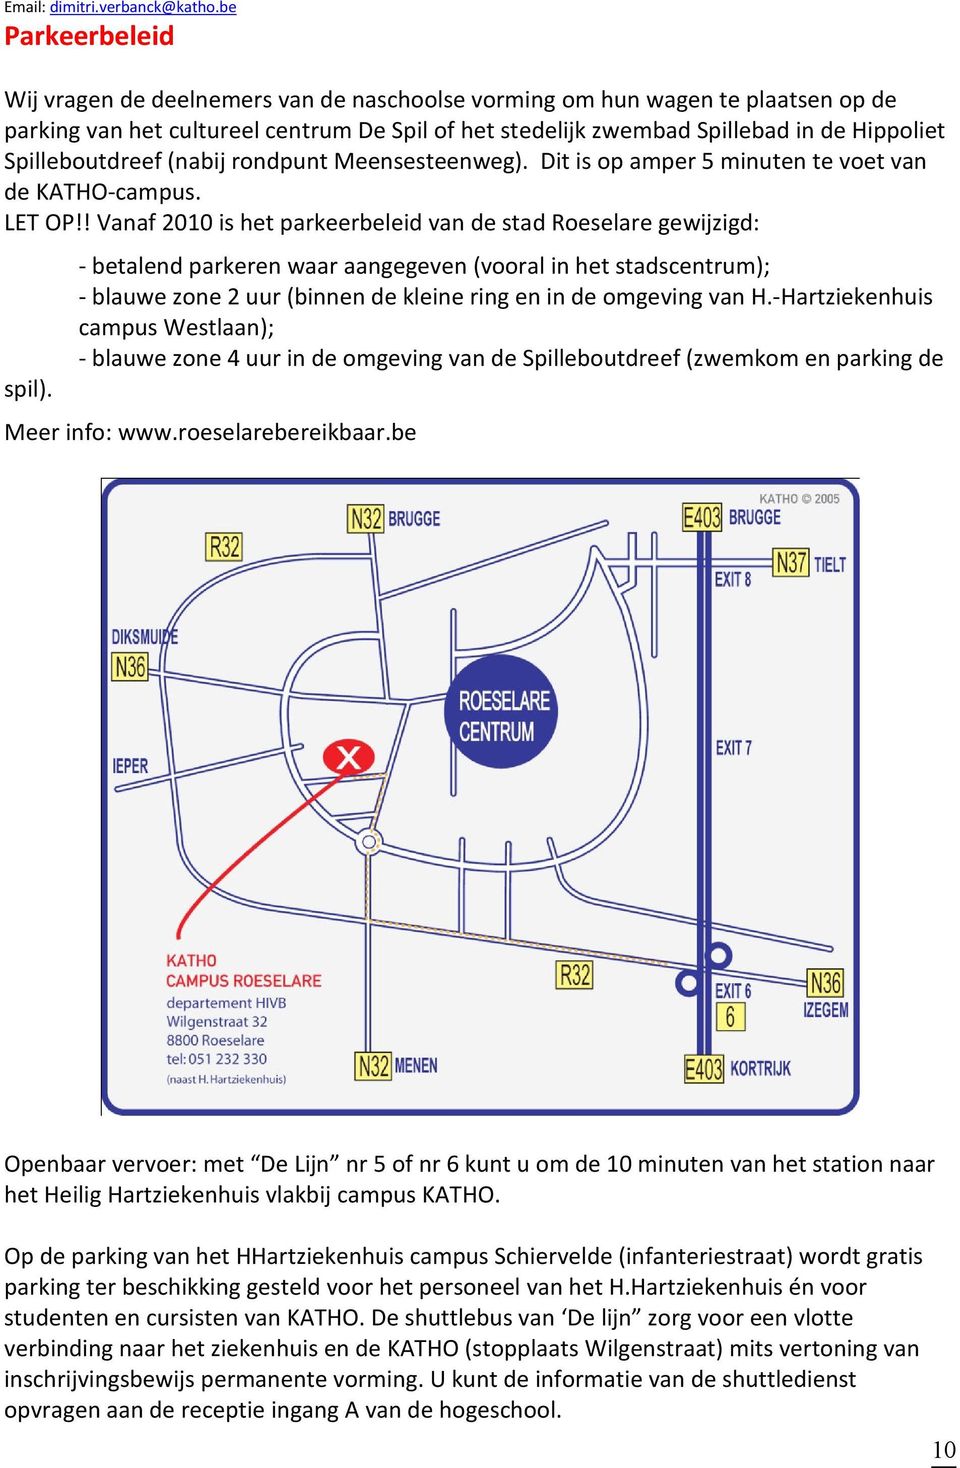 Spilleboutdreef (nabij rondpunt Meensesteenweg). Dit is op amper 5 minuten te voet van de KATHO-campus. LET OP!! Vanaf 2010 is het parkeerbeleid van de stad Roeselare gewijzigd: spil).